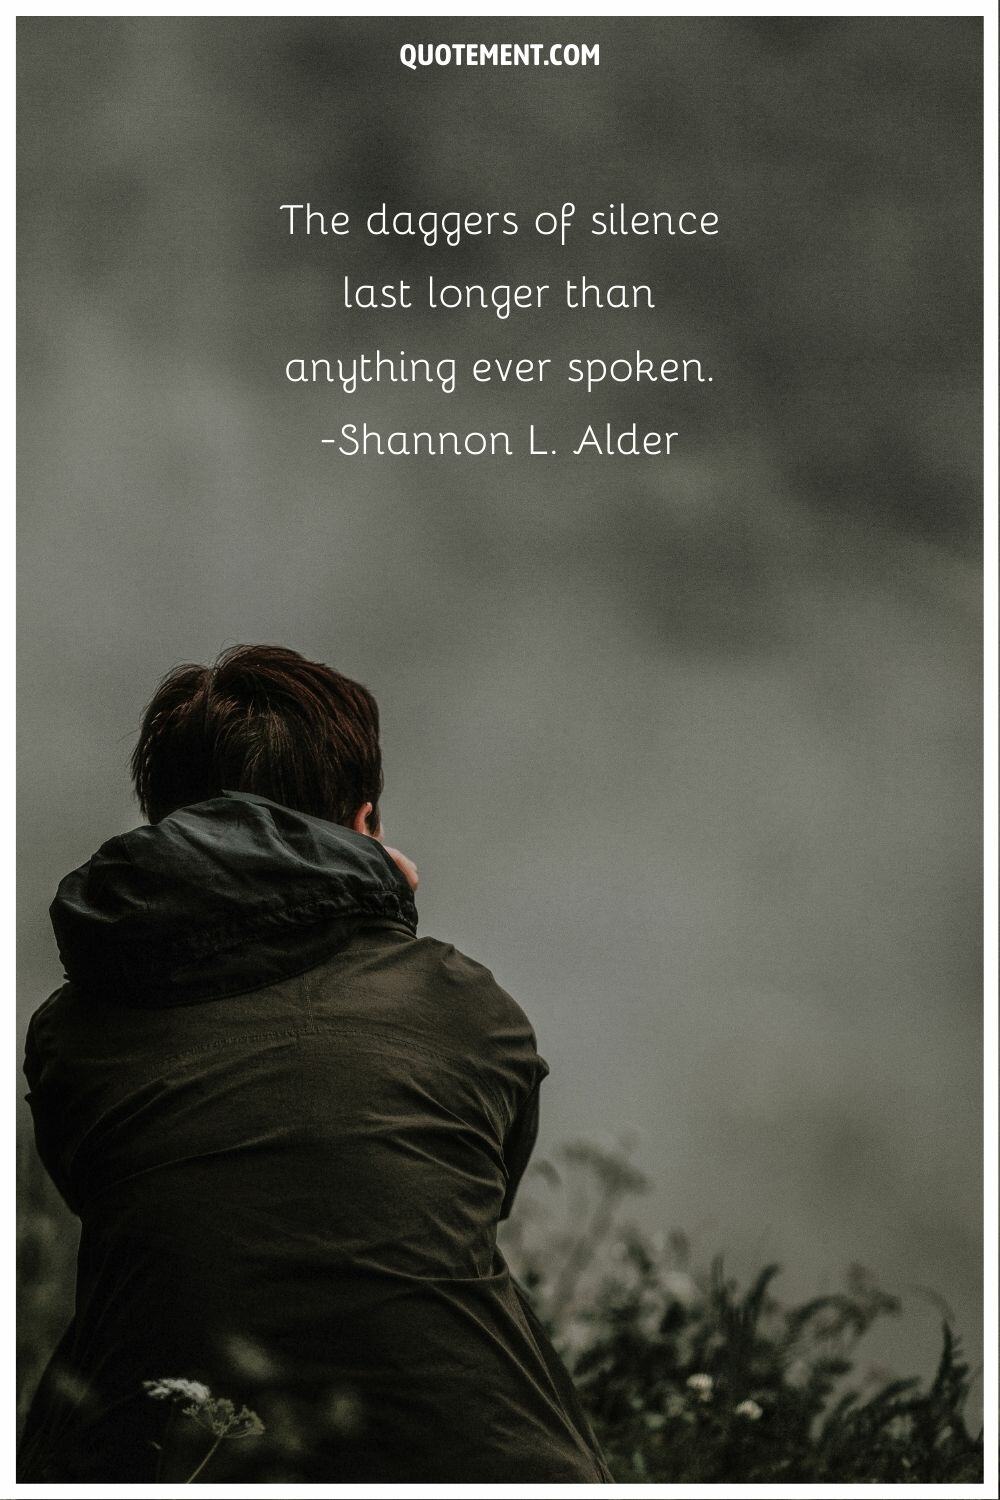 “The daggers of silence last longer than anything ever spoken.” ― Shannon L. Alder